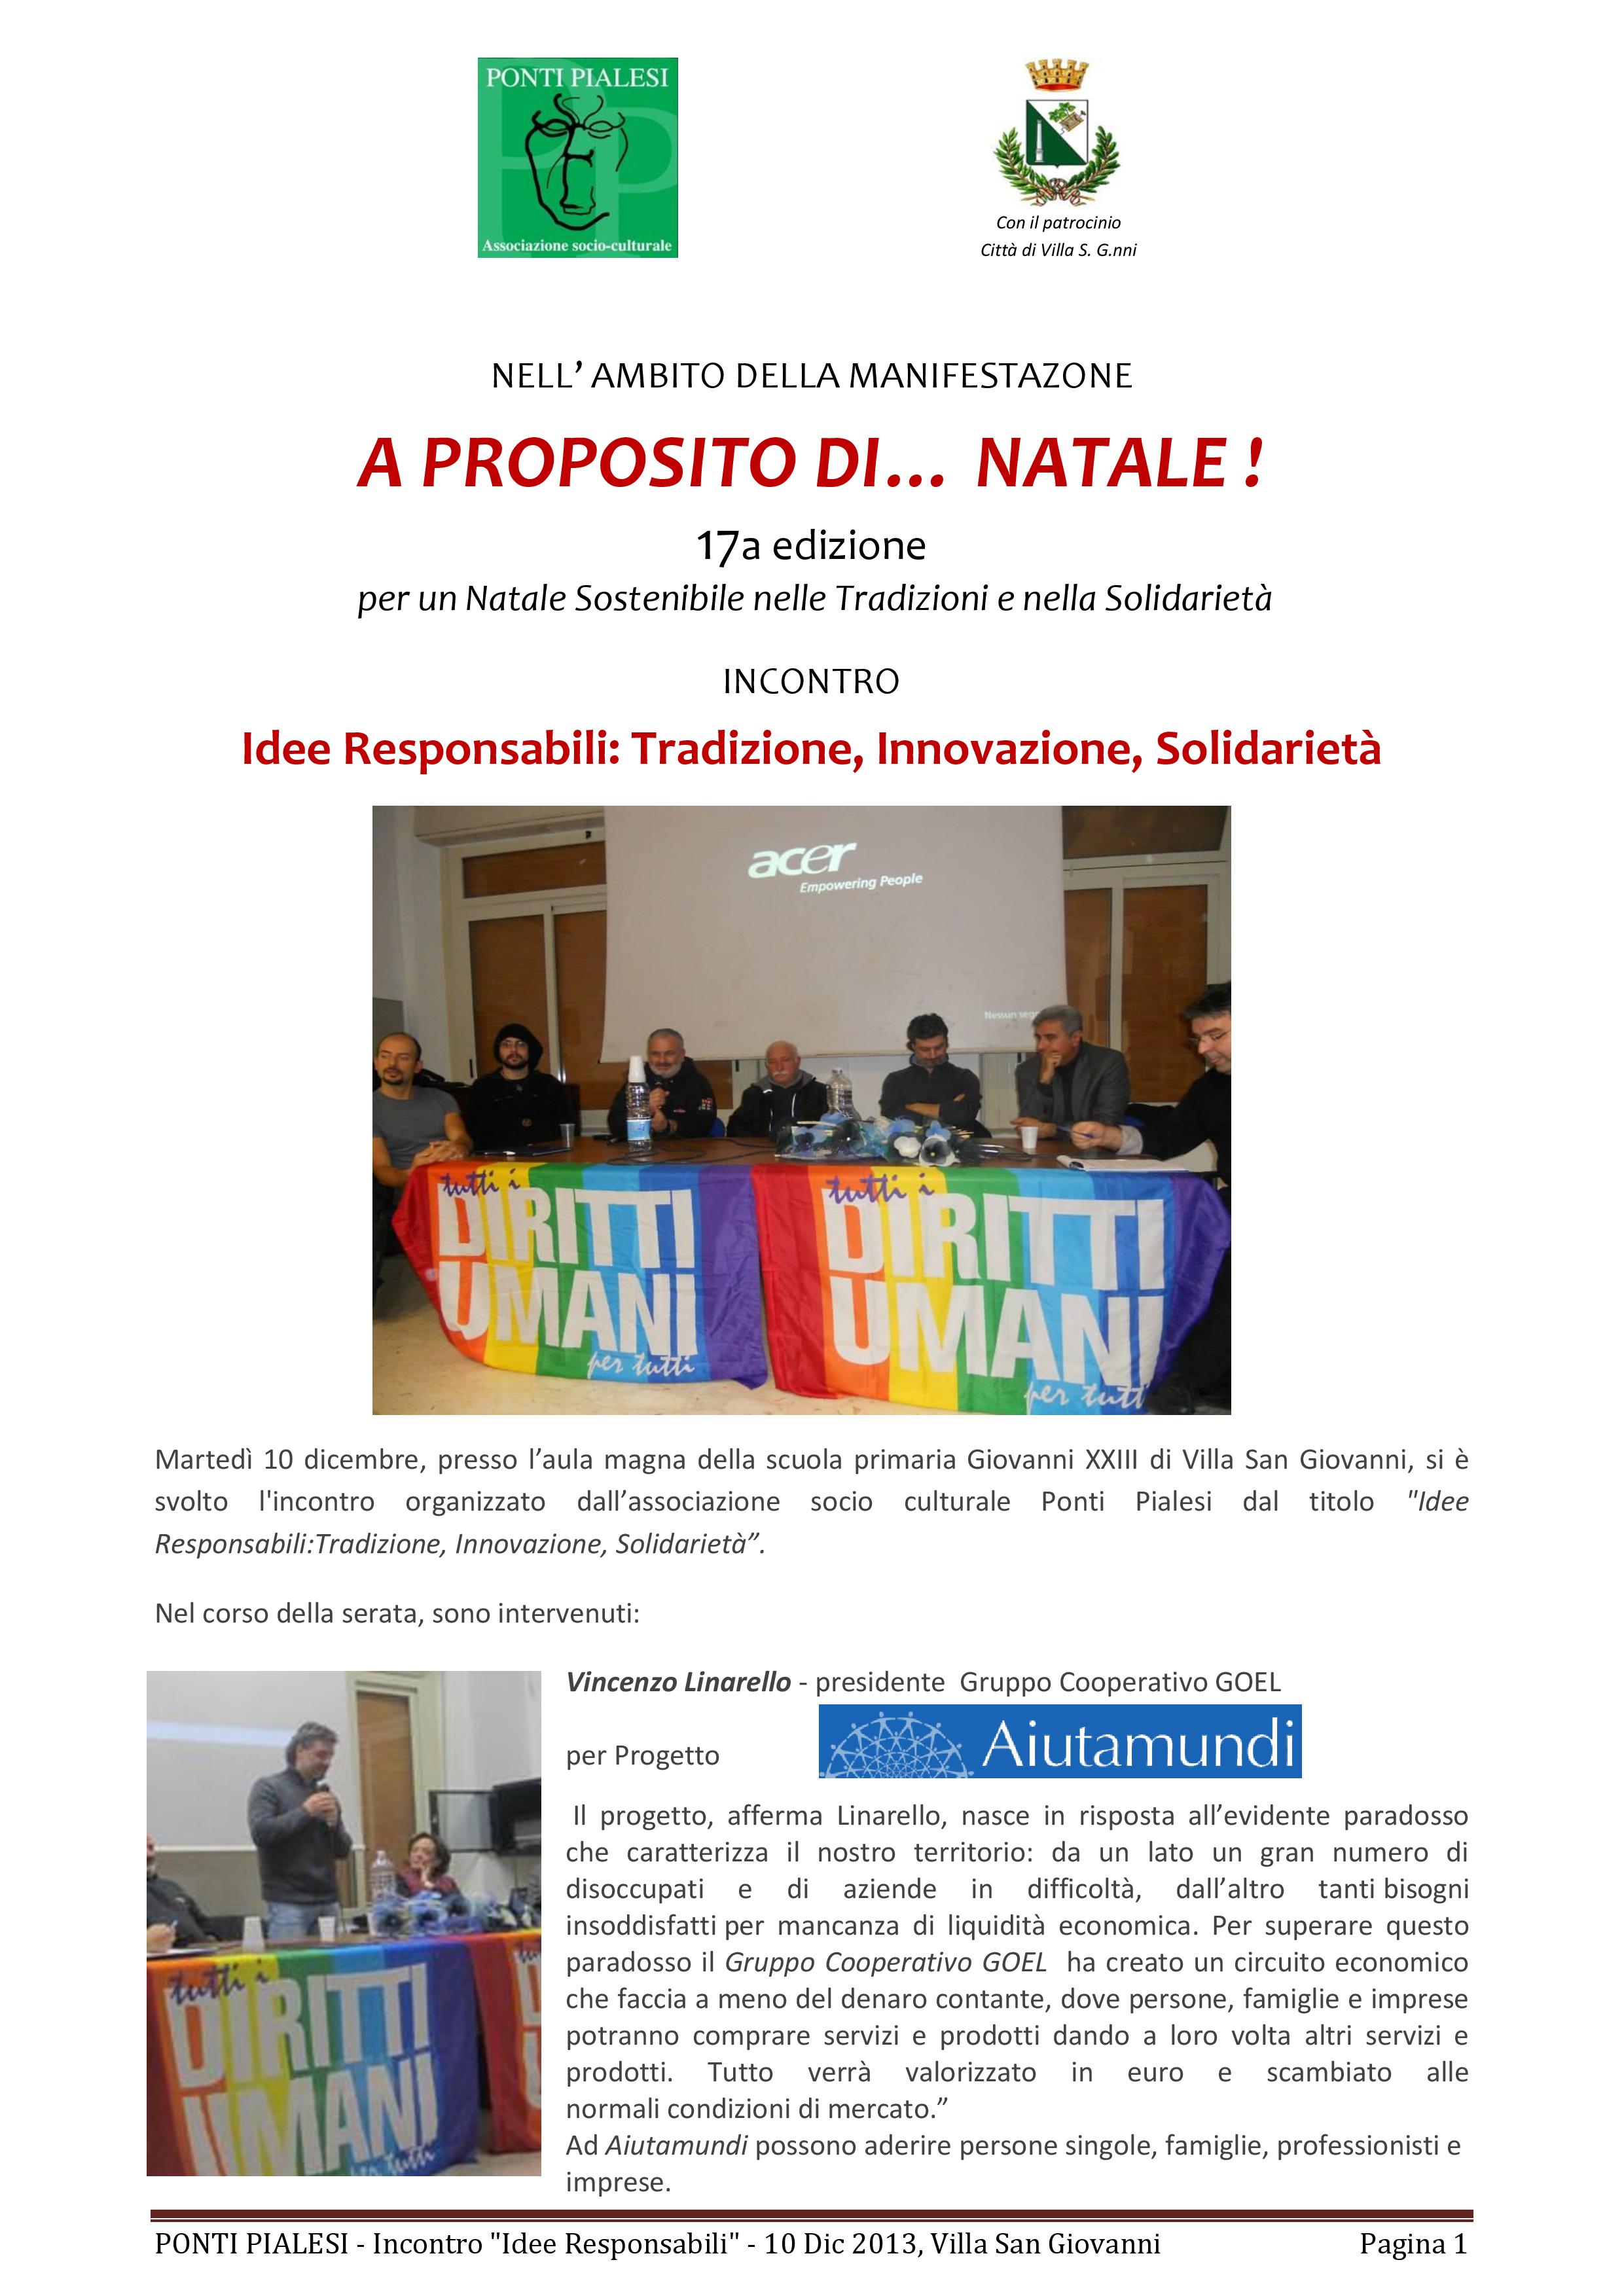 PONTI PIALESI- Incontro "IDEE RESPONSABILI: Tradizione, Innovazione, Solidarietà" - Villa San Giovanni 10 Dicembre 2013